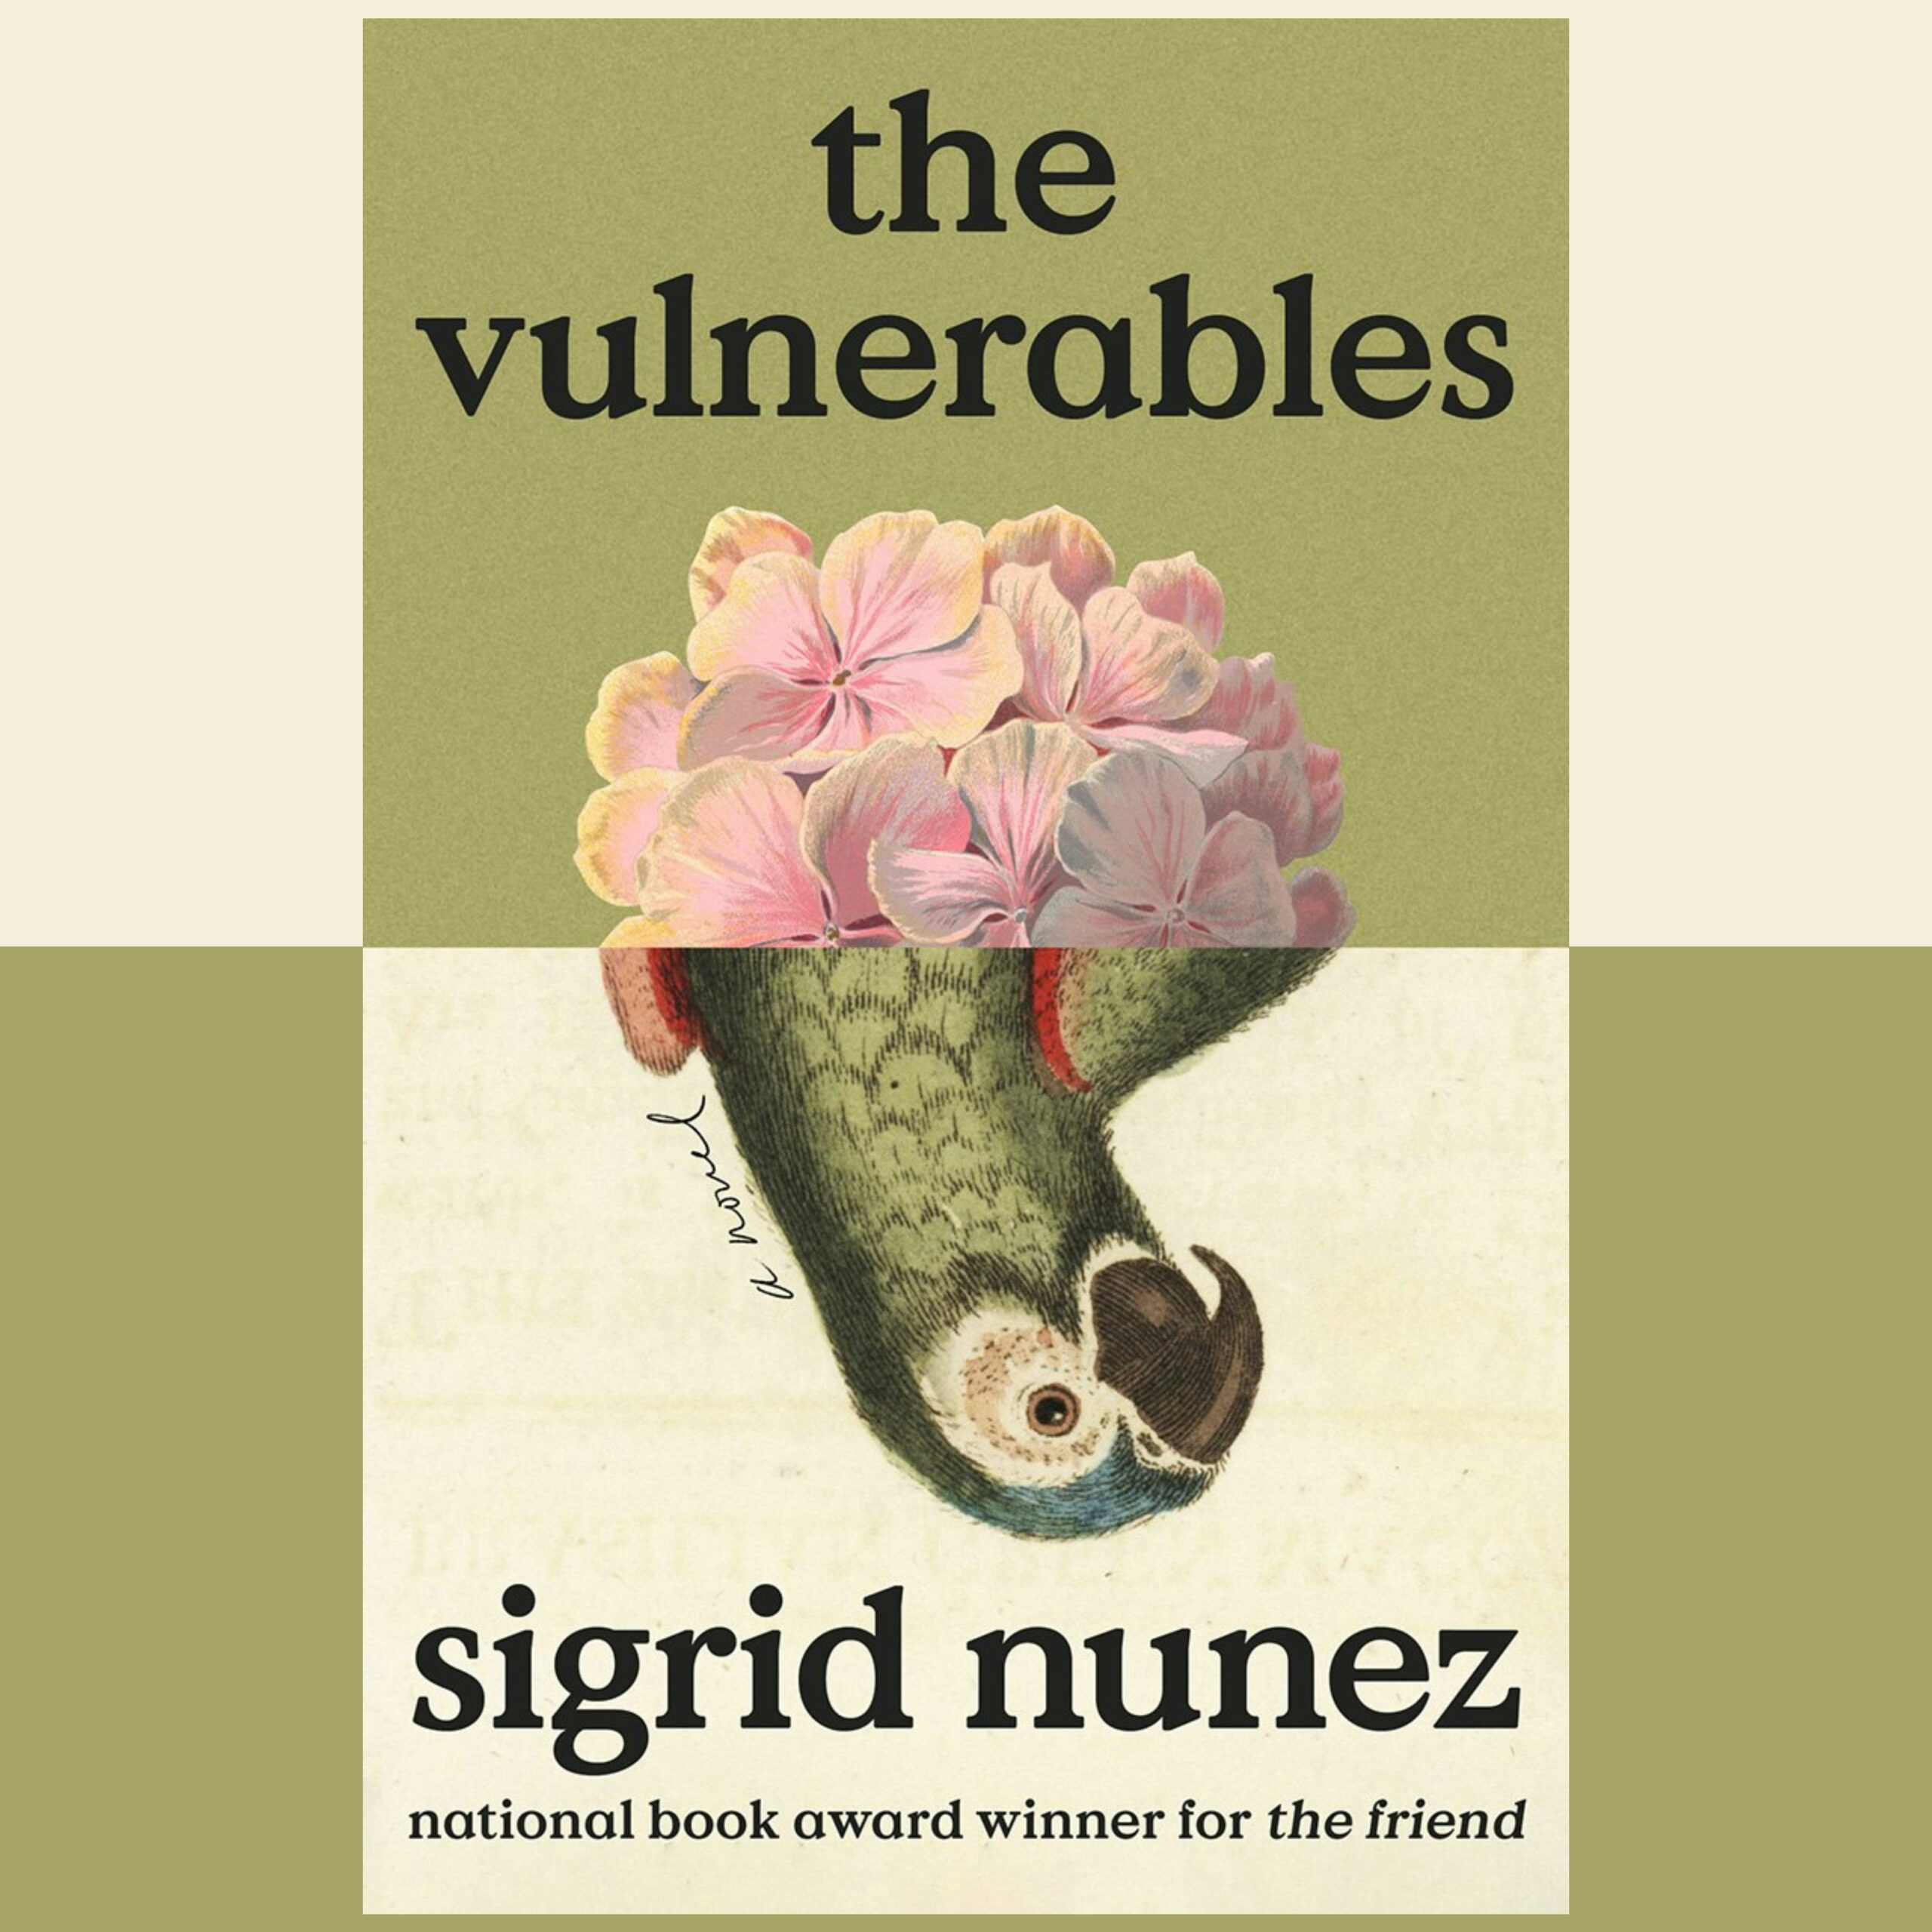 The Book Show - Sigrid Nunez - The Vulnerables